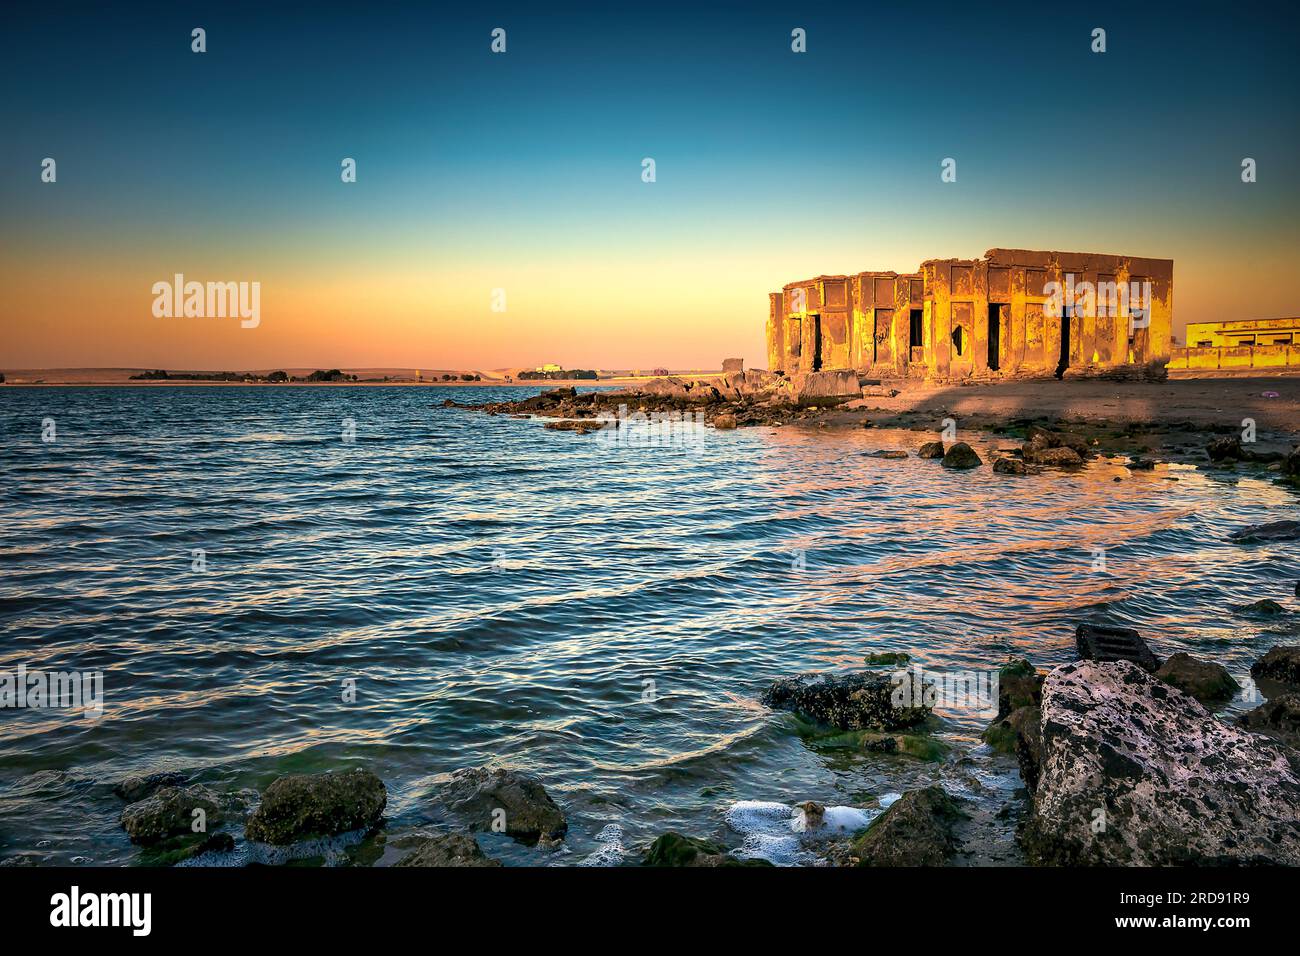 Amanecer impresionante con vista en agua sedosa Al uqair arruinado fort, al lado del mar de Arabia Saudita. Foto de stock